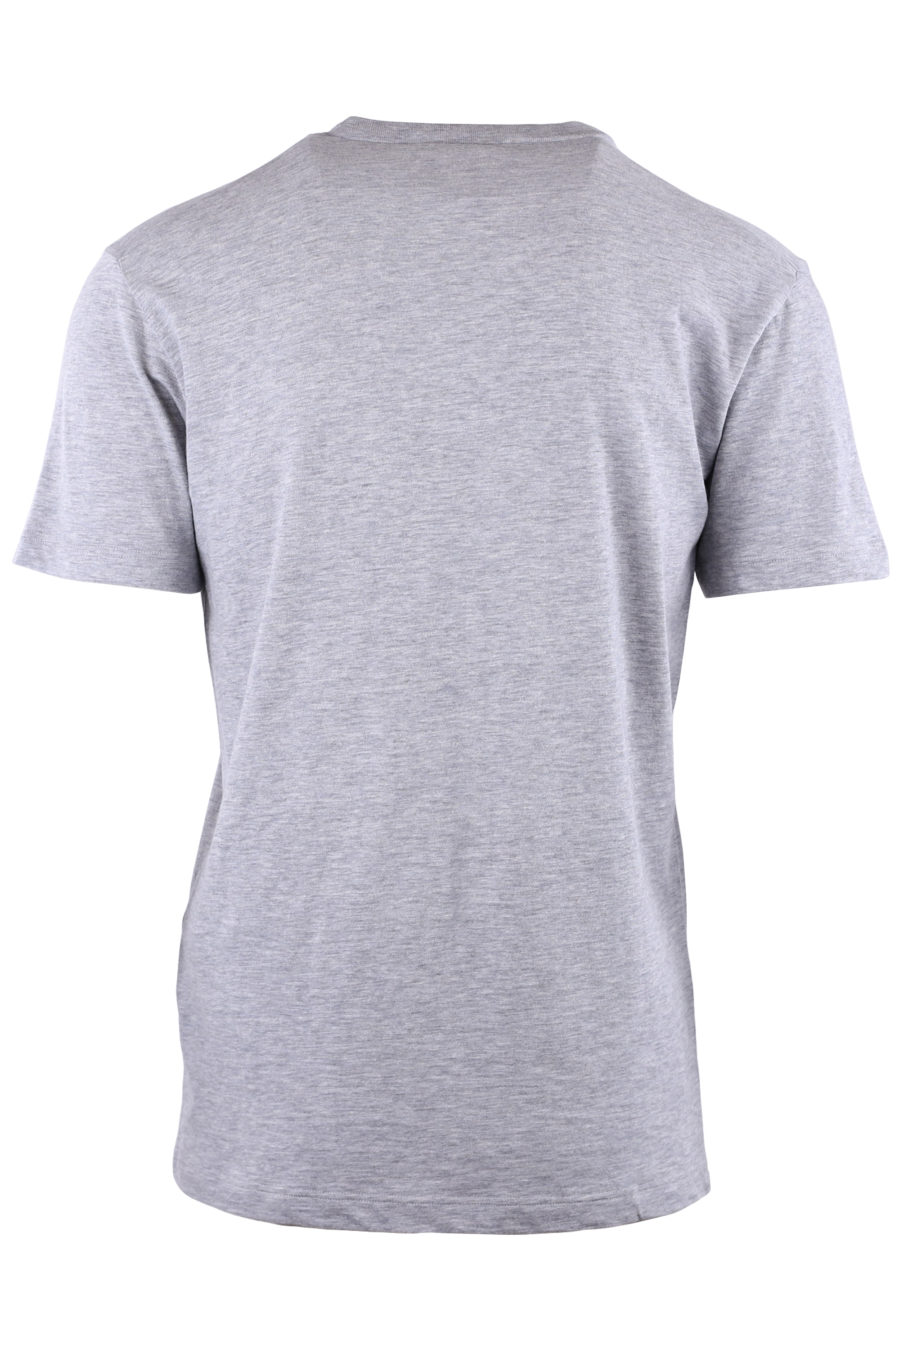 Camiseta gris con logo y estampado de perro - a19b94ffe678274b754f9f7b335272d61f963c12